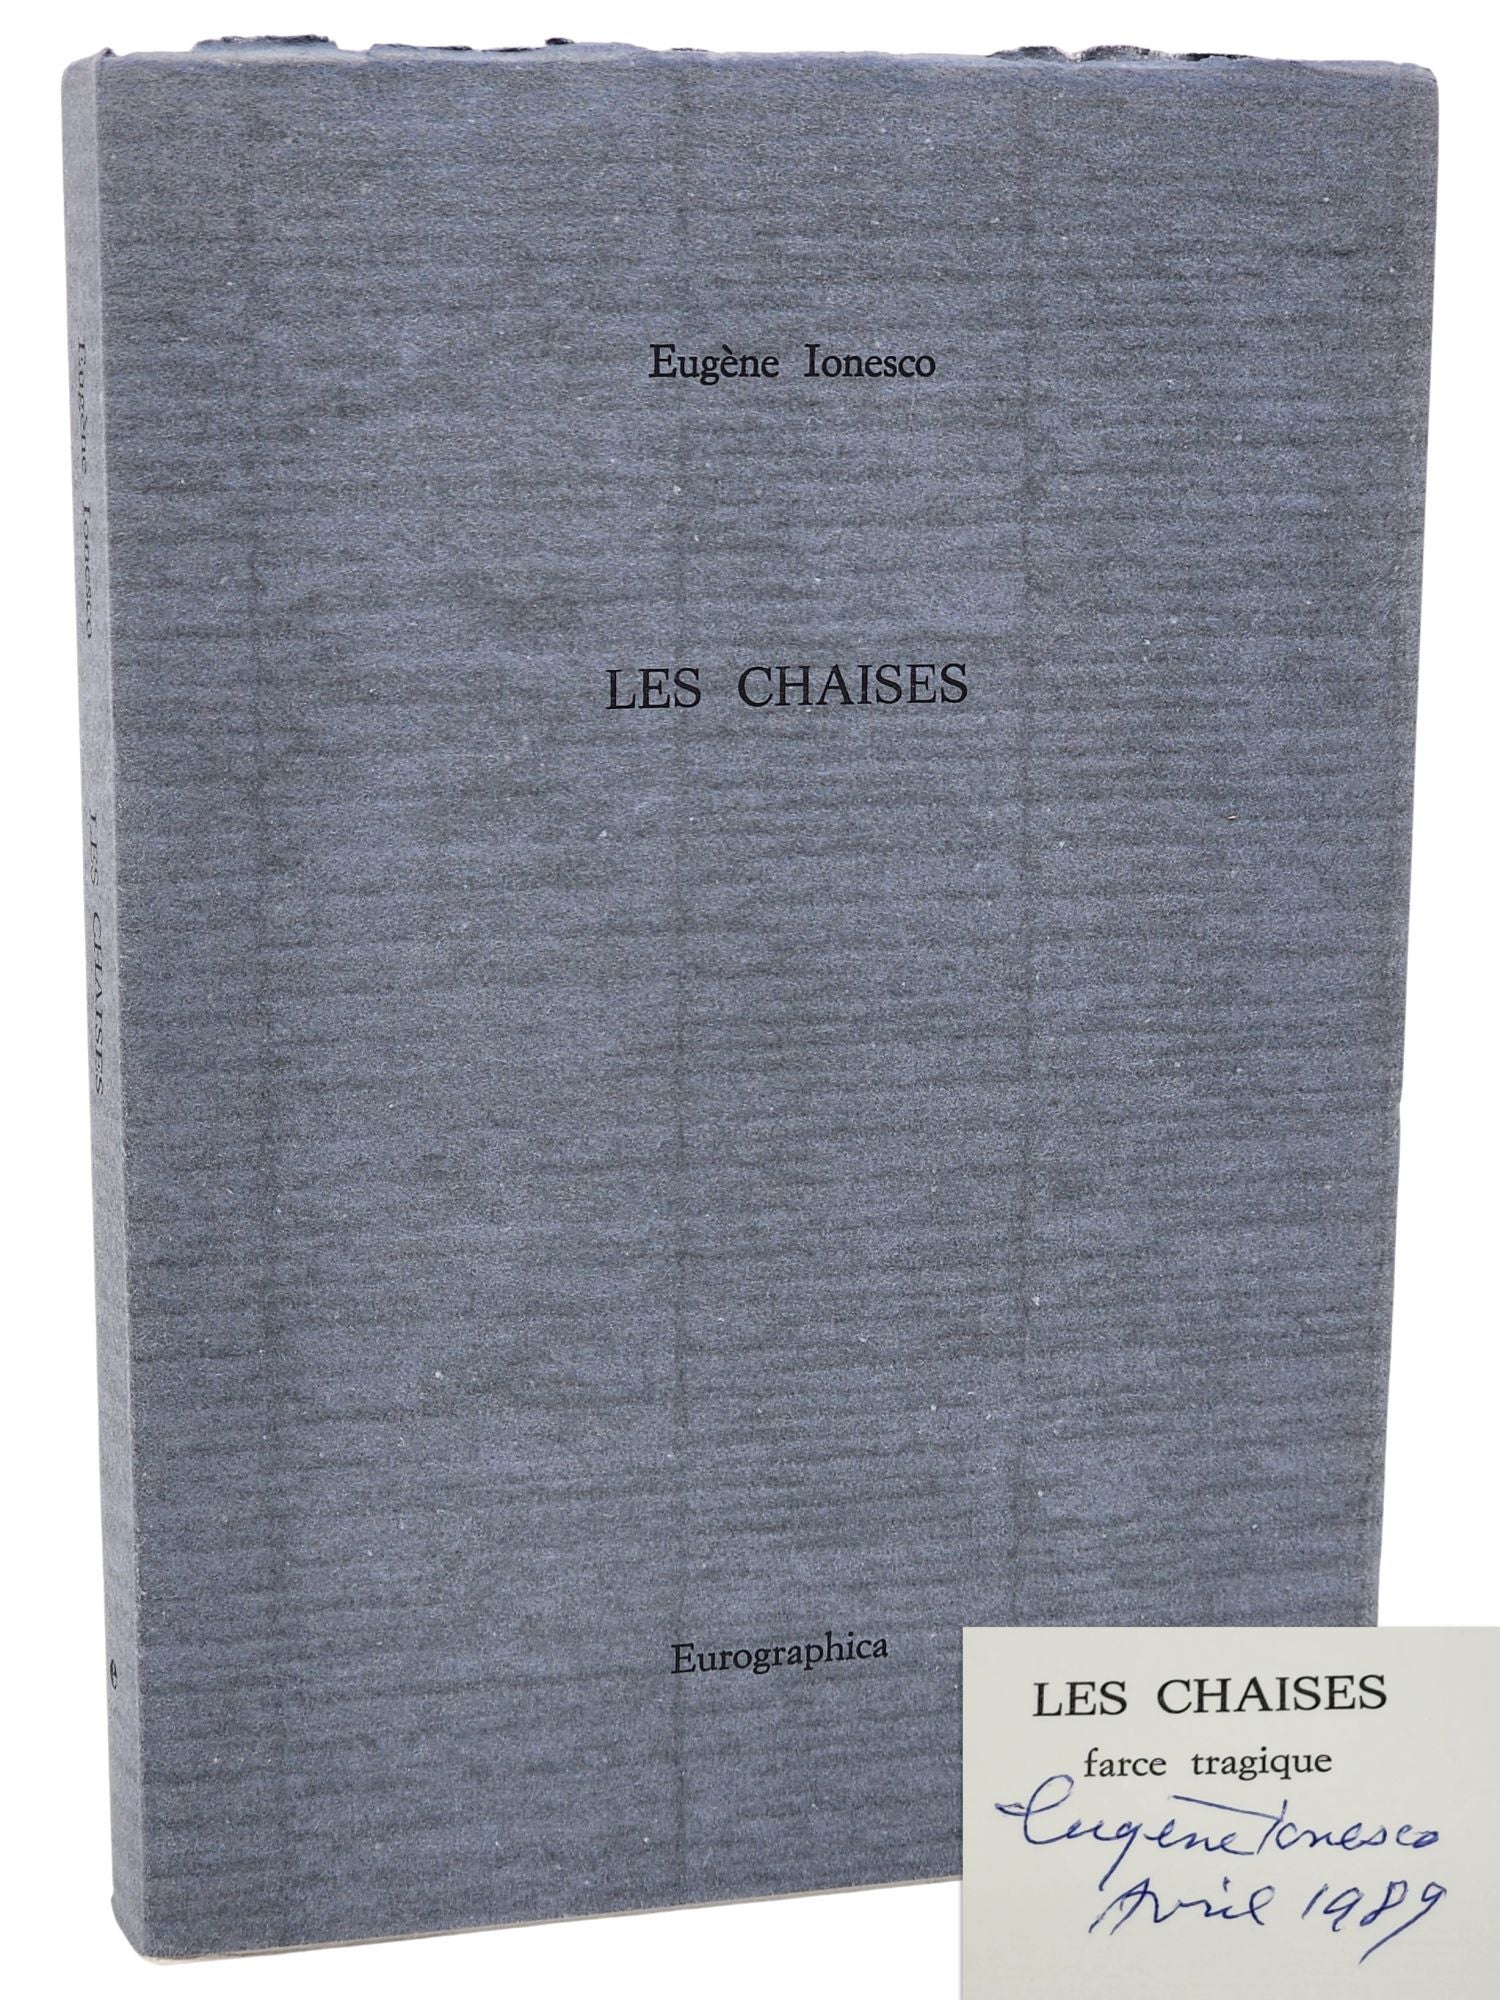 [Book #27958] LES CHAISES. Farce tragique. Eugene Ionesco.